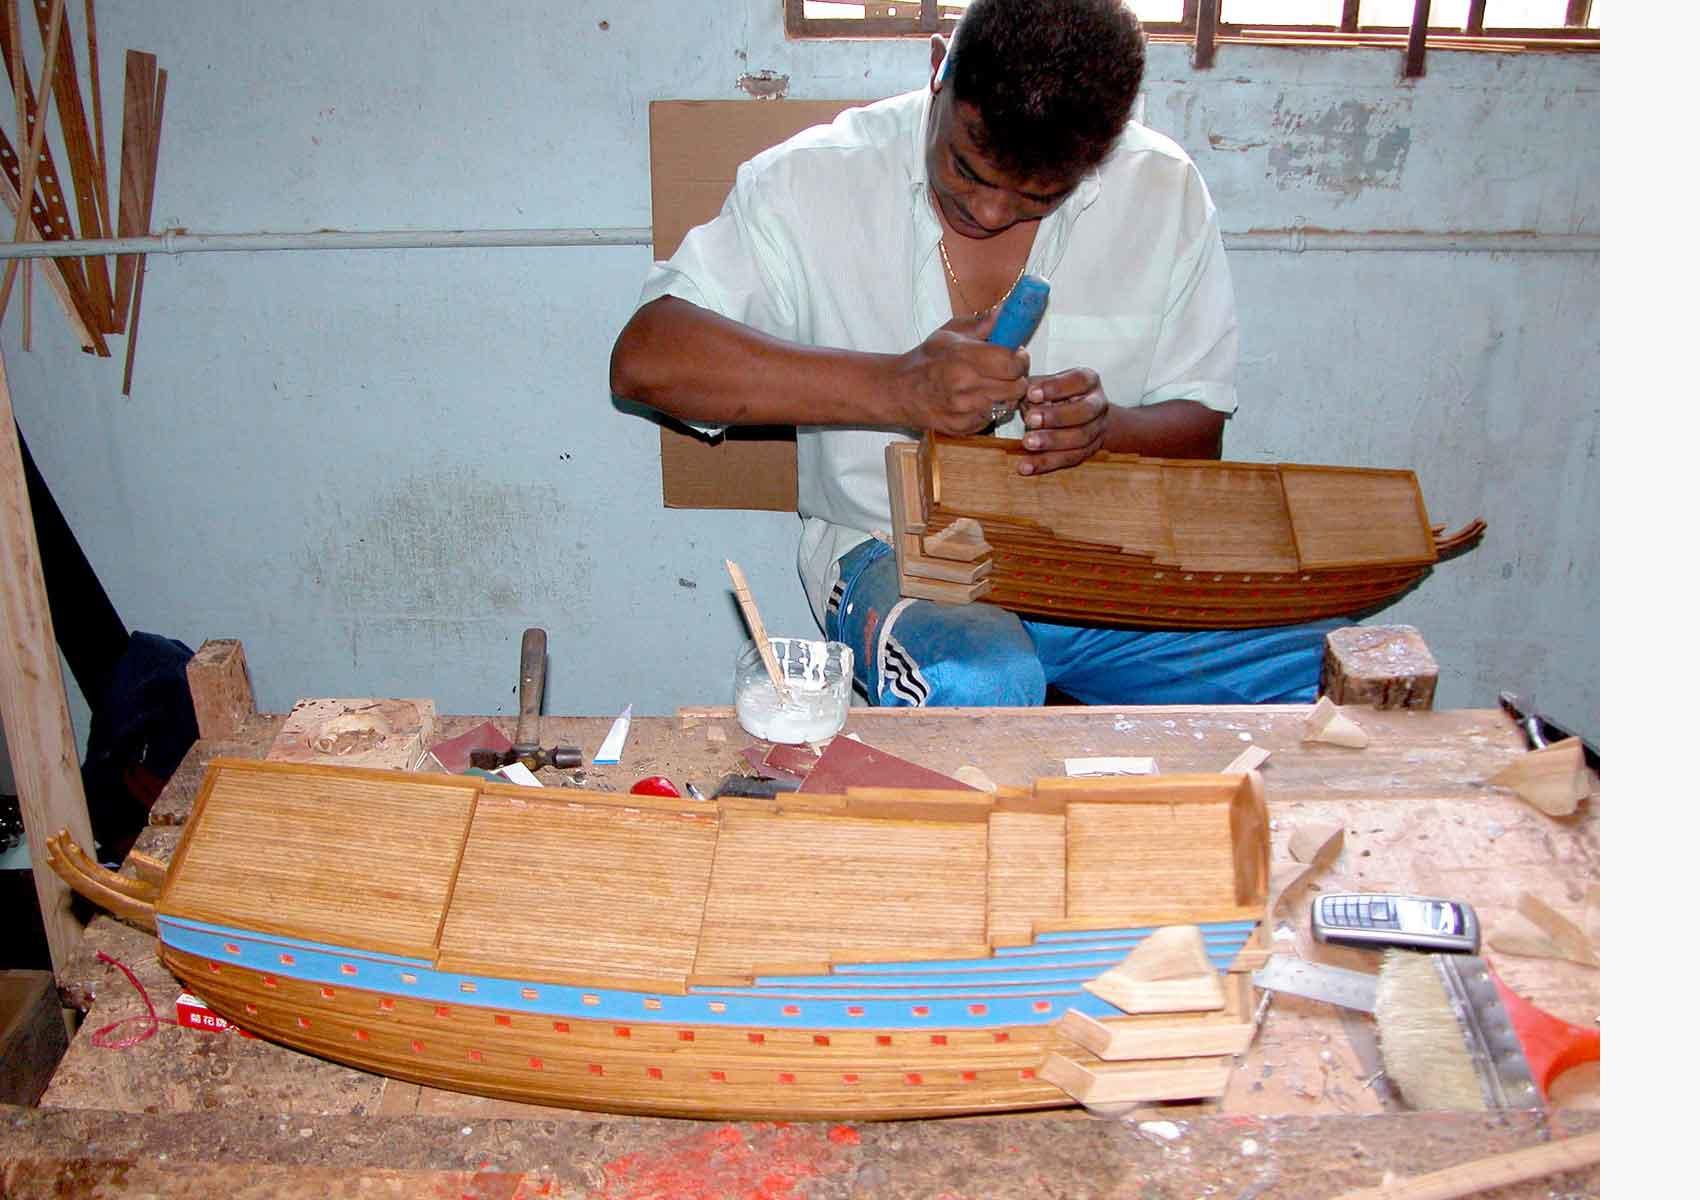 Wooden model boats, Wooden ship models, Model ship building